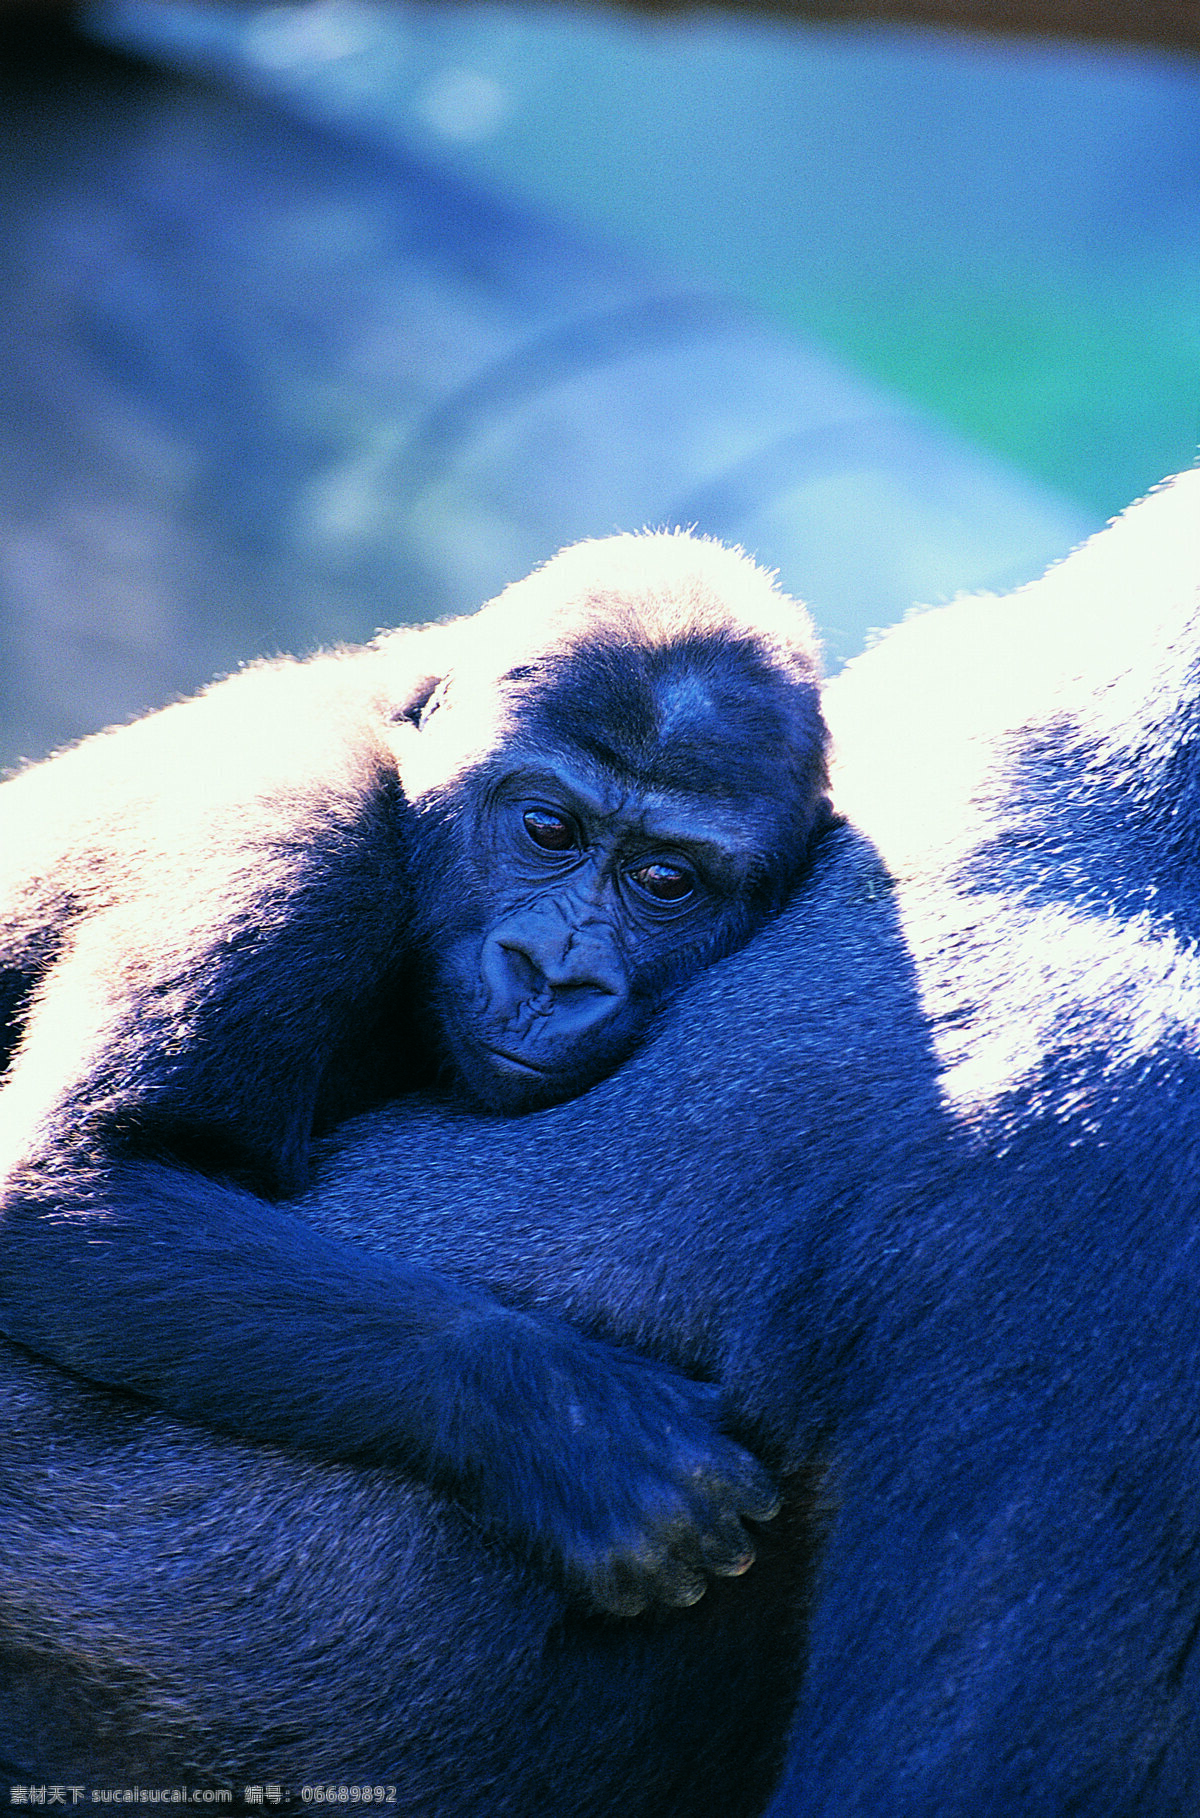 大黑 猩猩 野生动物 动物世界 哺乳动物 大猩猩 黑猩猩 摄影图 陆地动物 生物世界